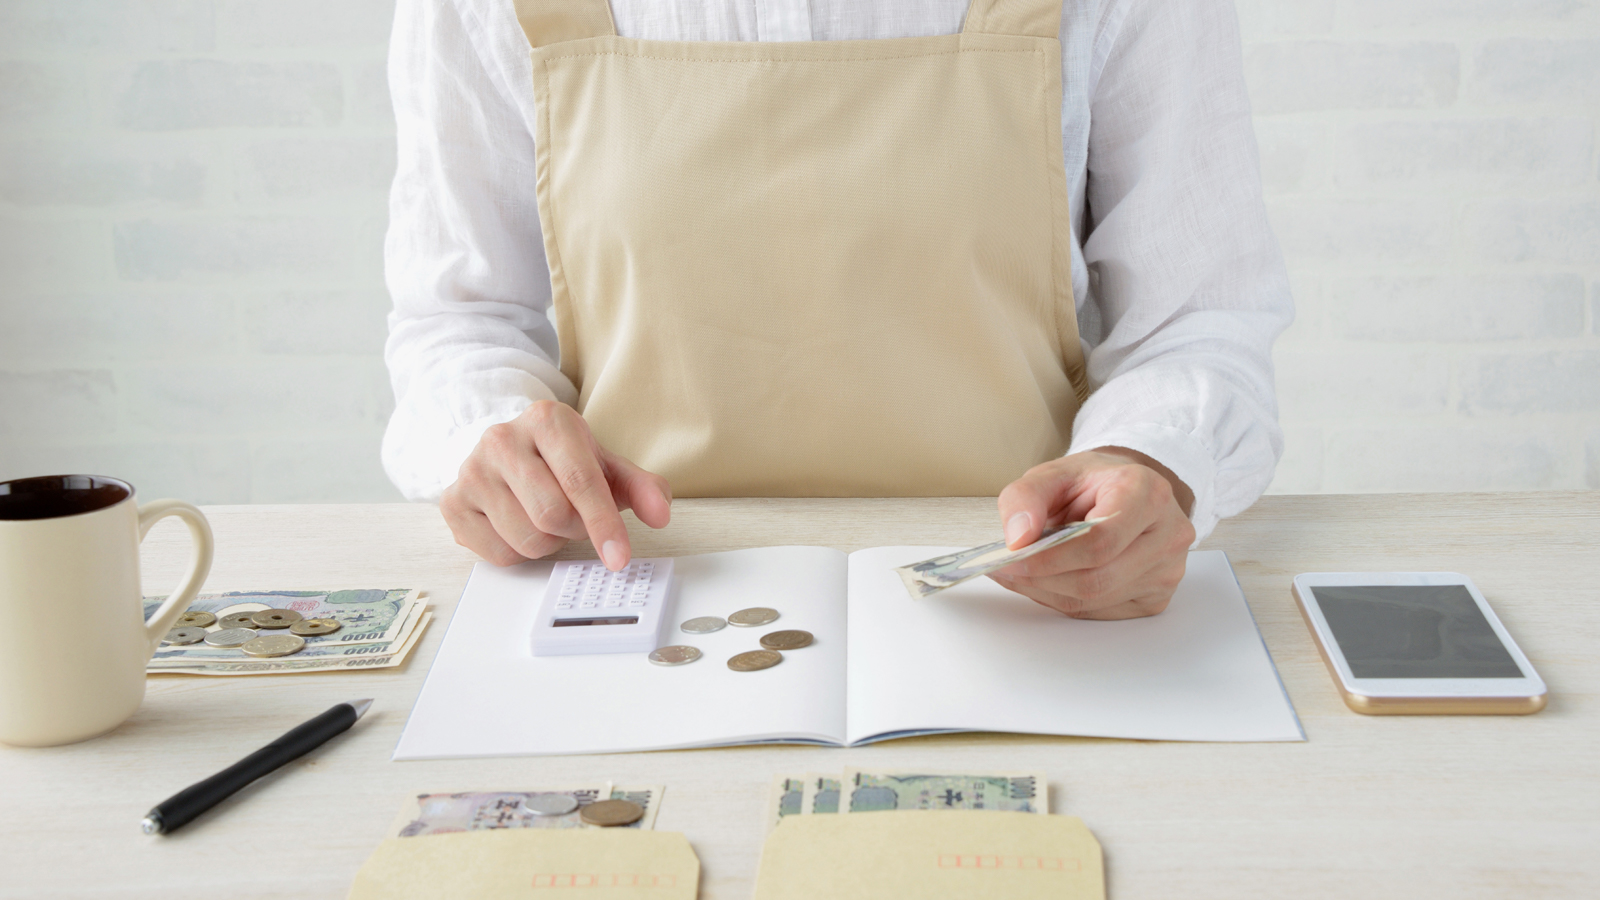  Kakeibo là một nghệ thuật quản lý tài được người Nhật sử dụng thường xuyên như một cách tiết kiệm tiền hiệu quả nhất. Các cuốn sách xuất bản chia sẻ về phương pháp quản lý tiền bạc này luôn được bán rất chạy ở nhiều nước trên thế giới. 